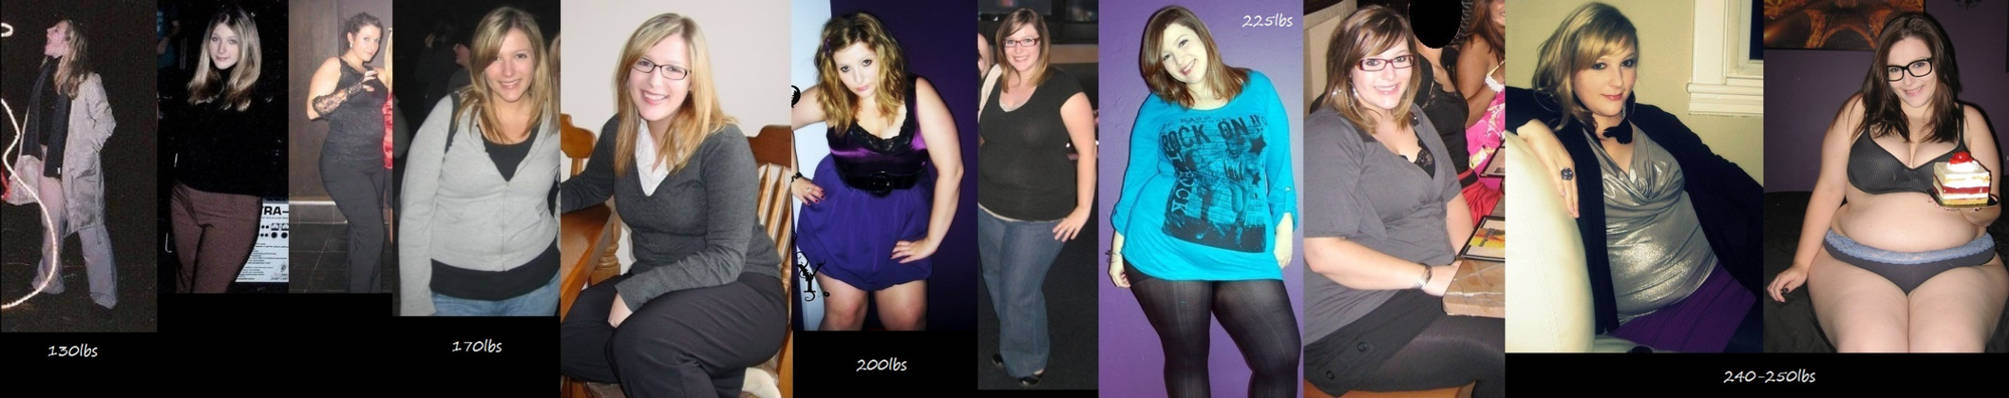 Weight Gain Progression